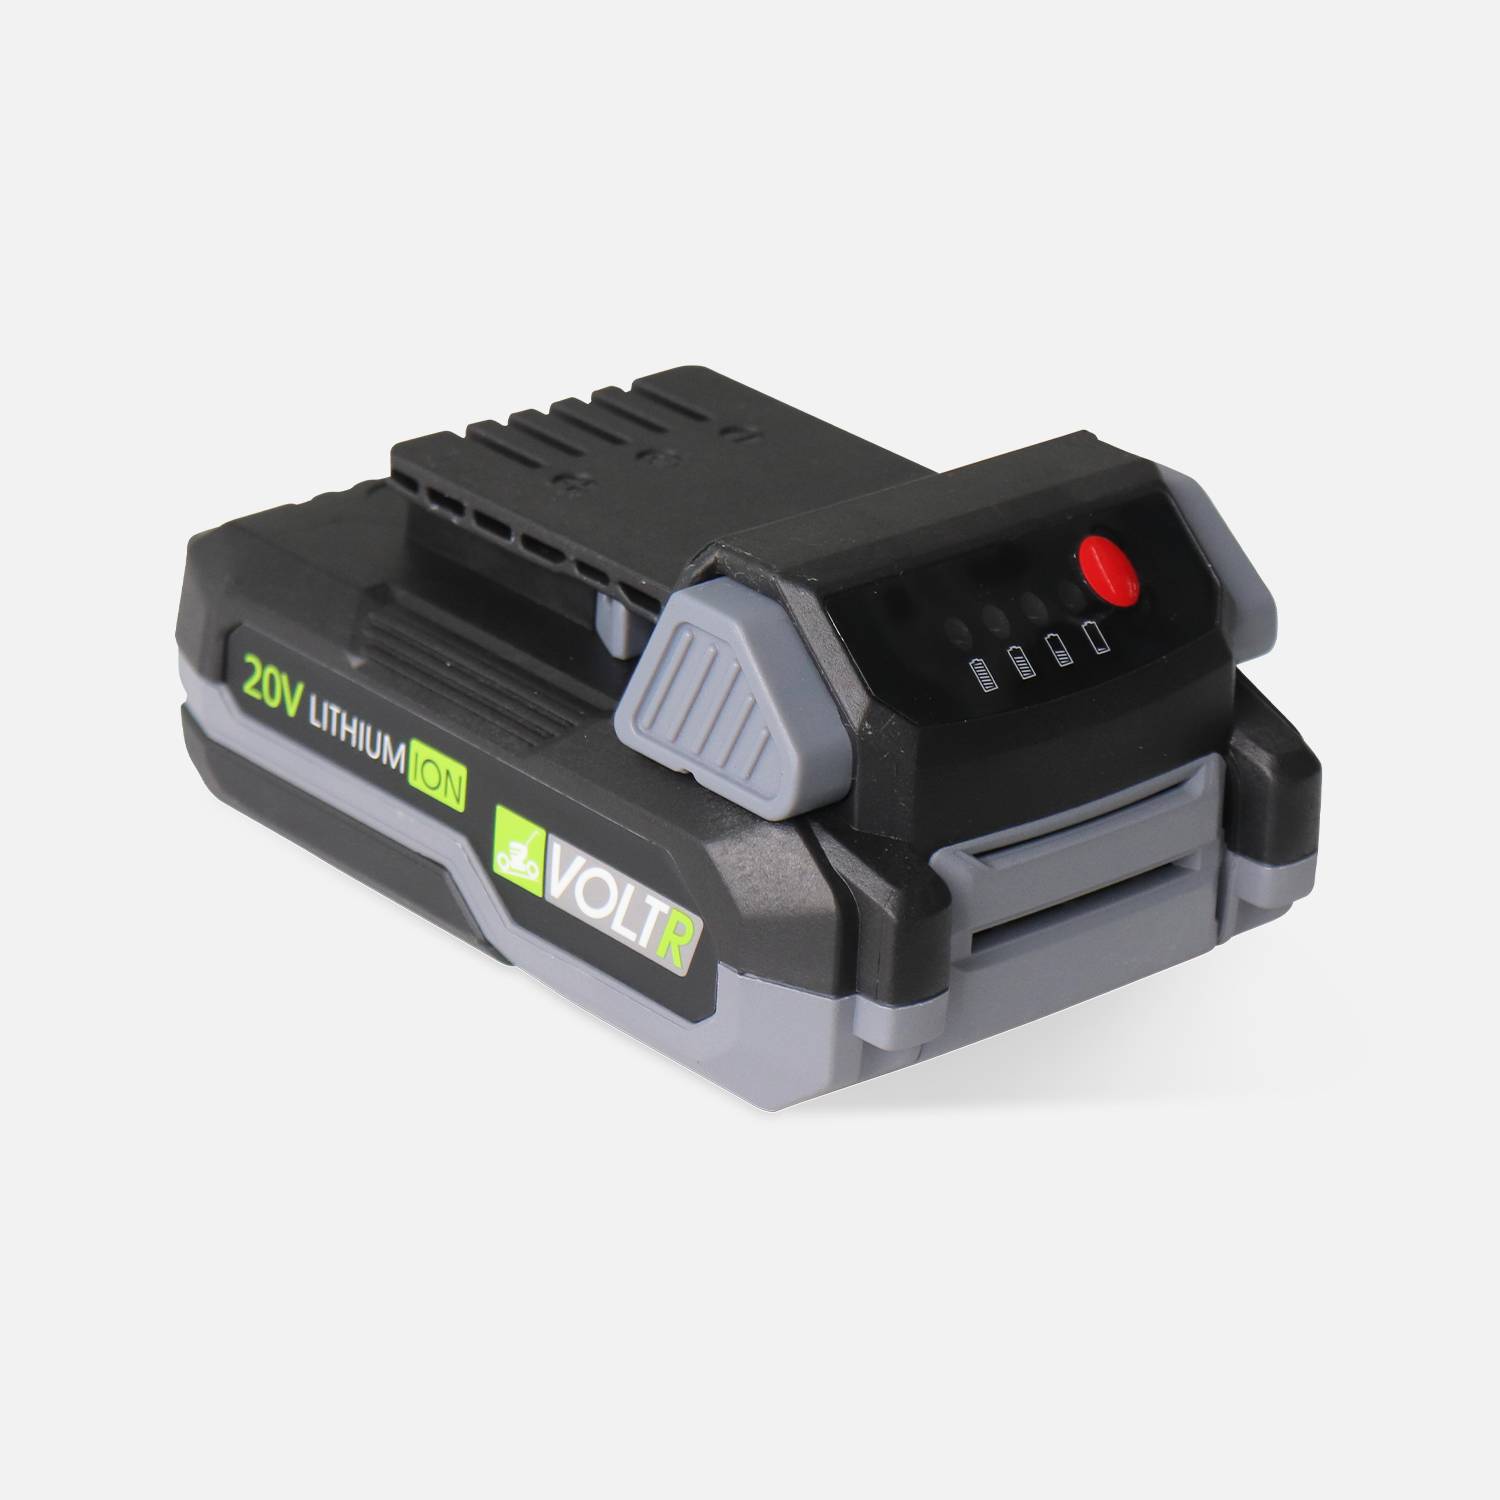 Batterie VOLTR 20V 2.0Ah pour outils VOLTR 20V - interchangeables, revêtement antidérapant, coins renforcés, anti-casse Photo1